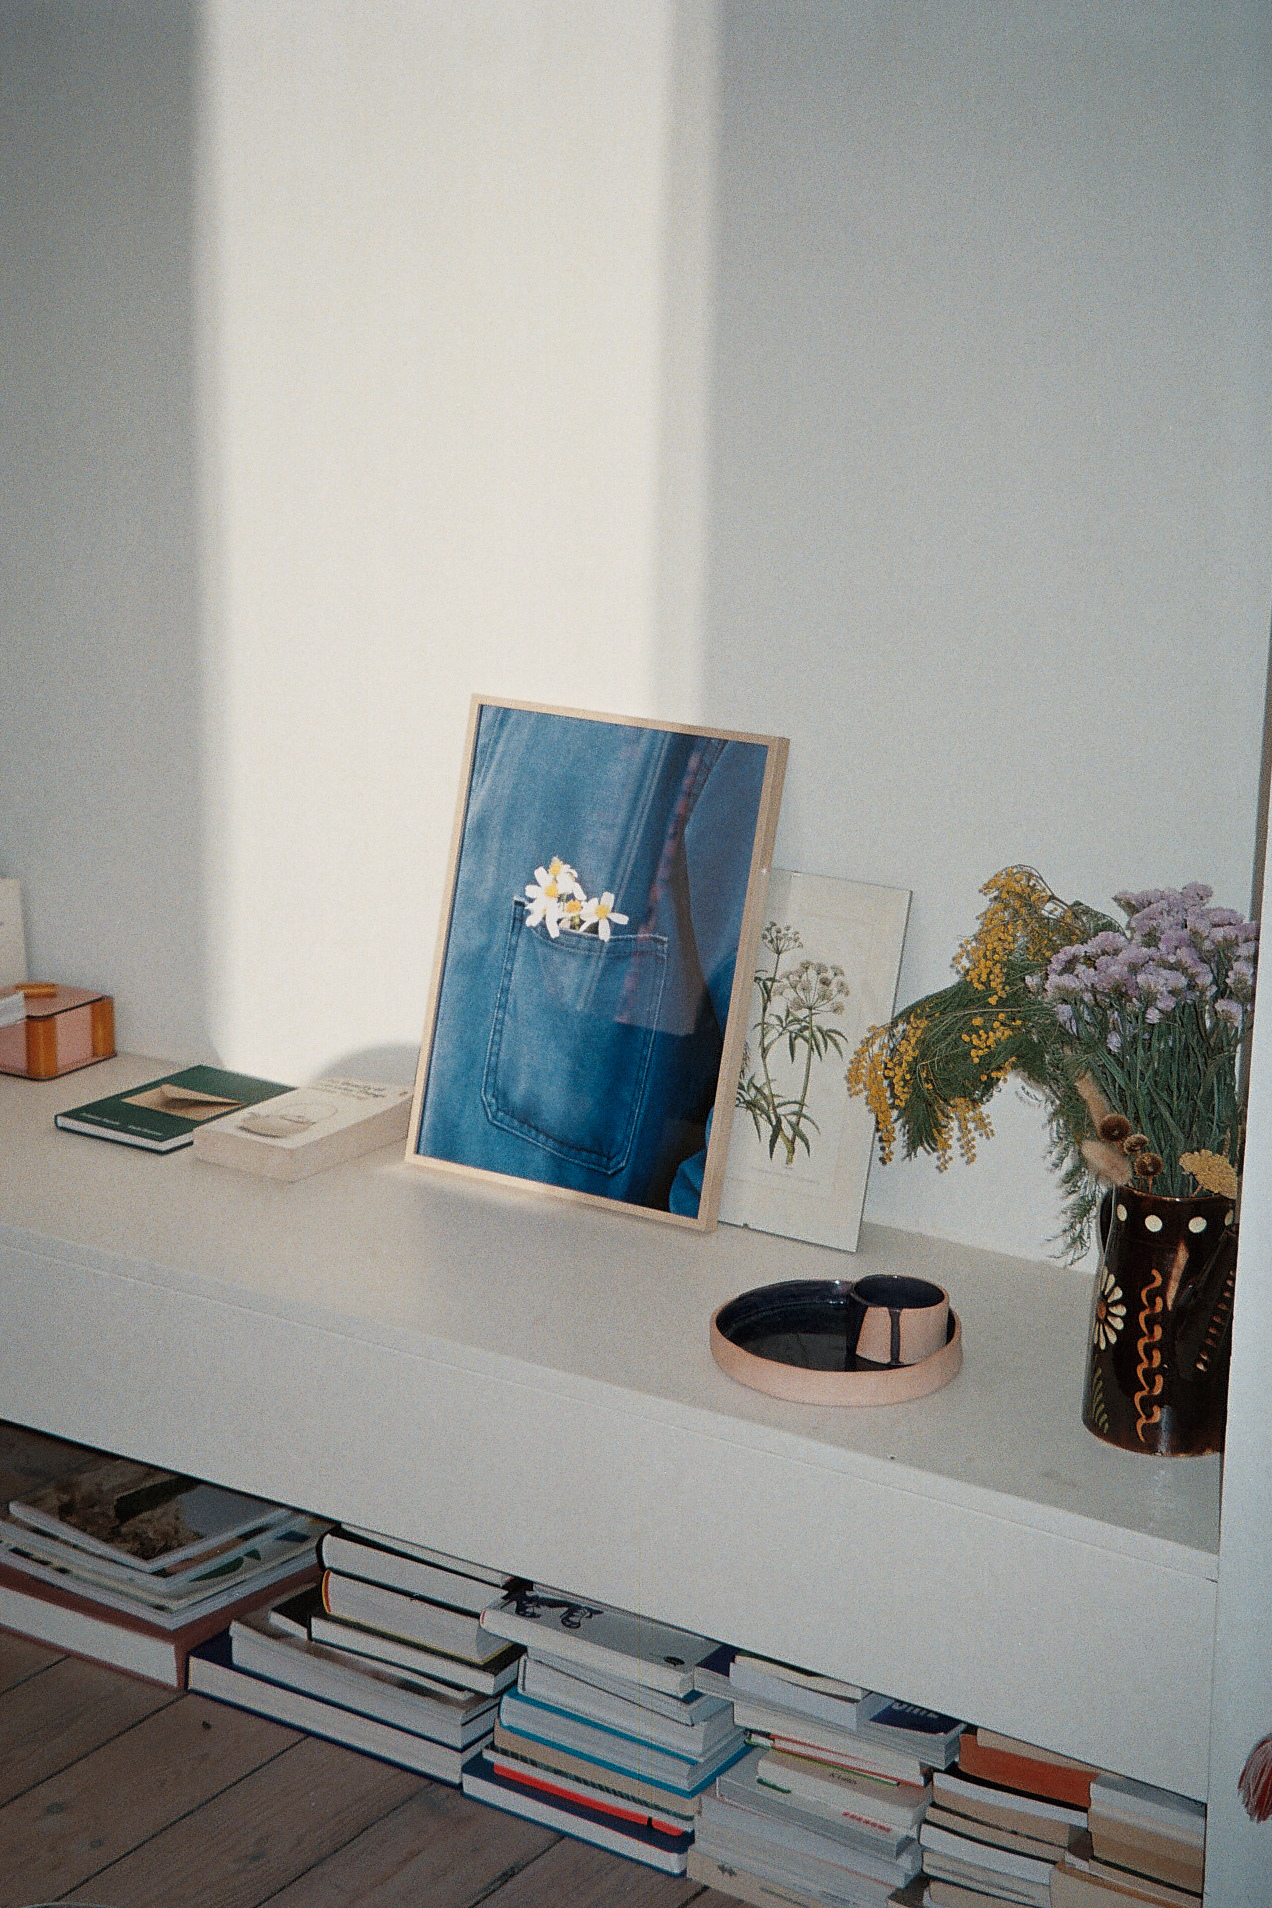 Photographie encadrée sur un meuble avec de la décoration